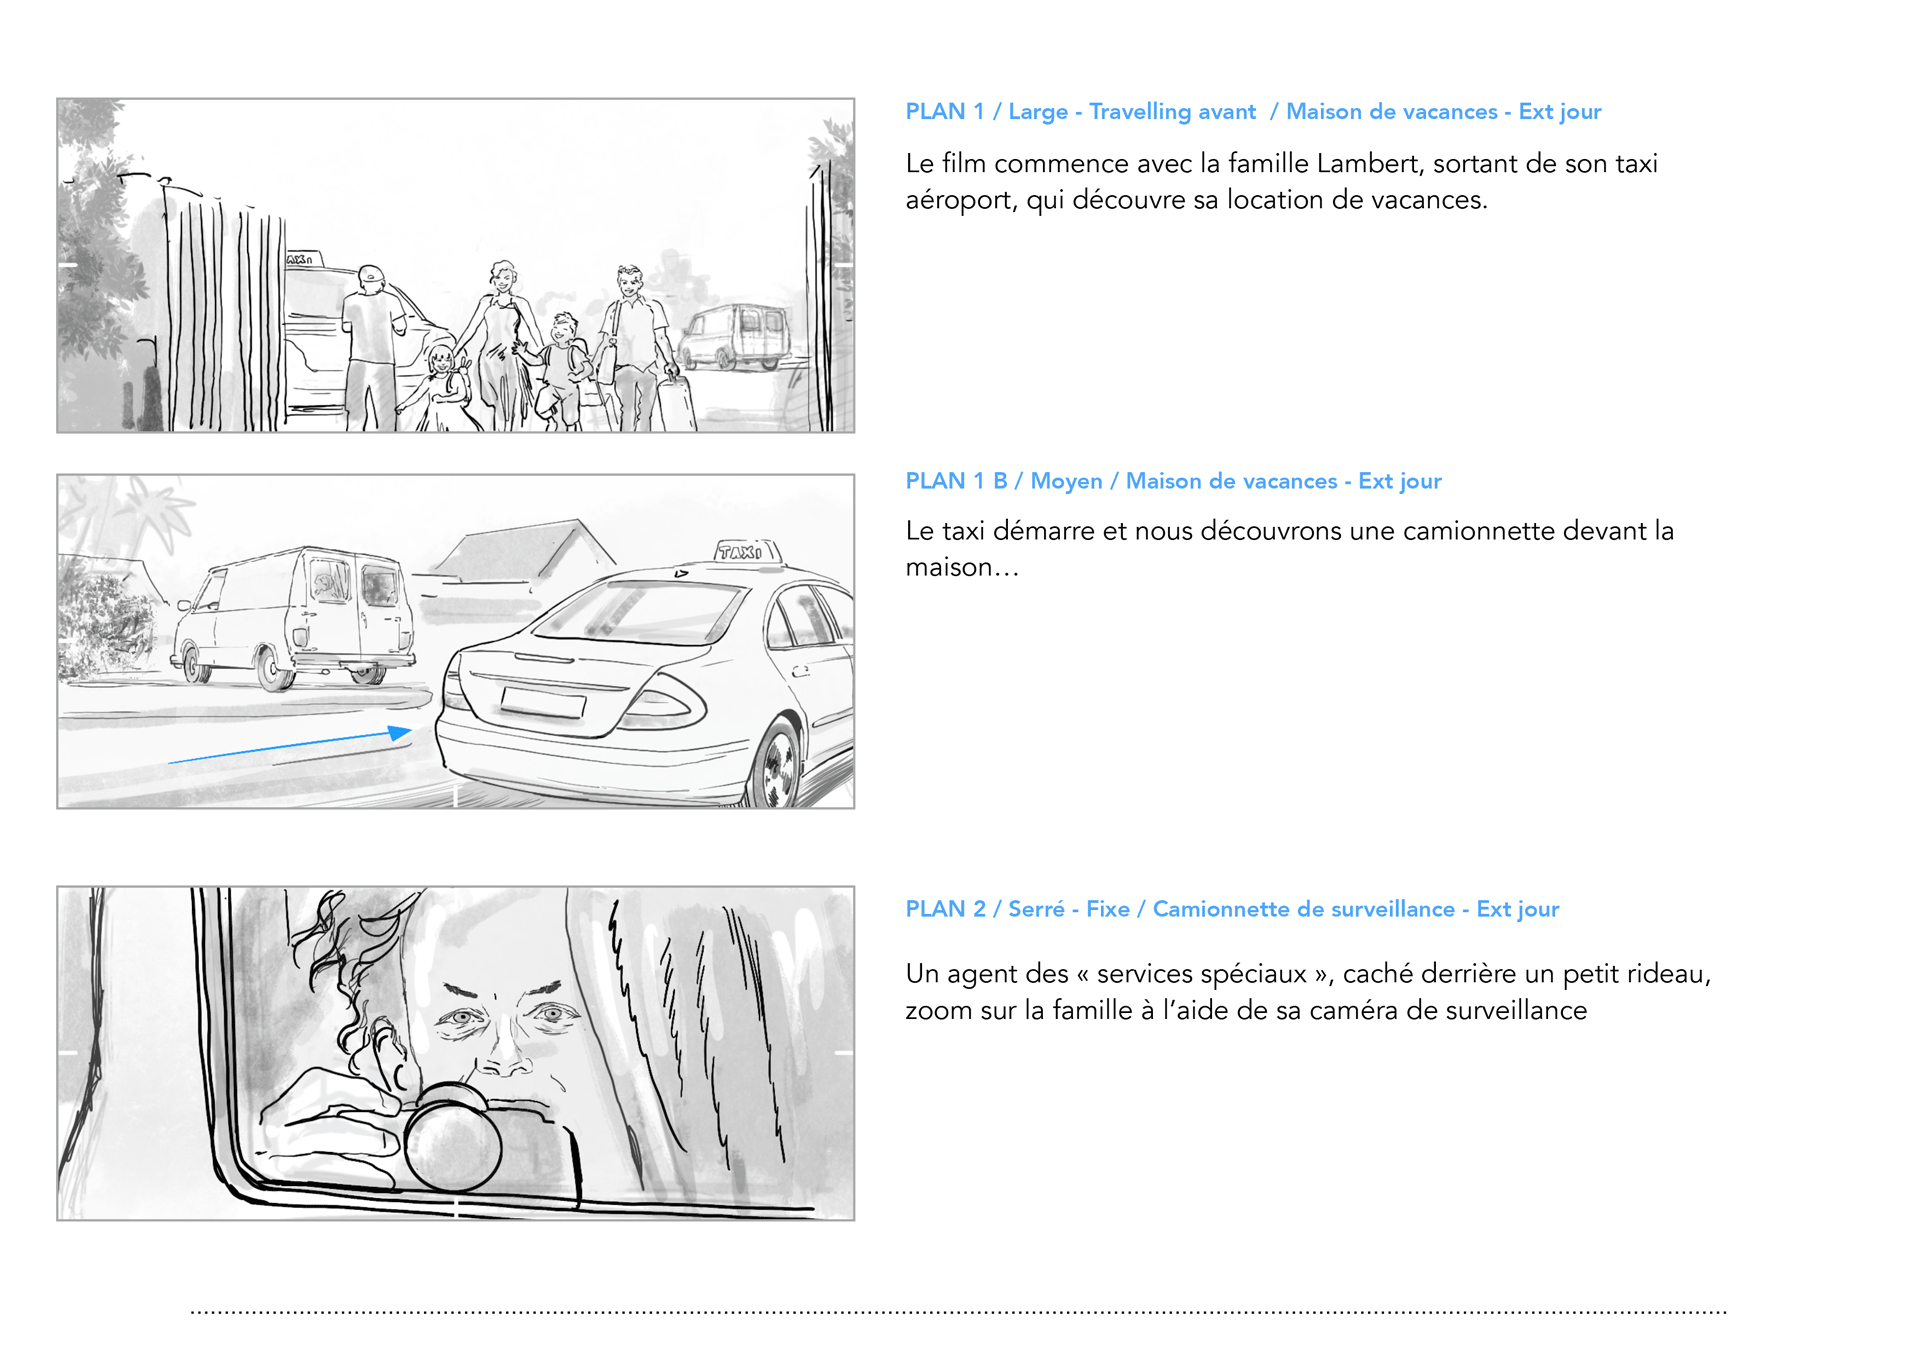 HomeExchange, Opération Lambert, storyboard, page 02